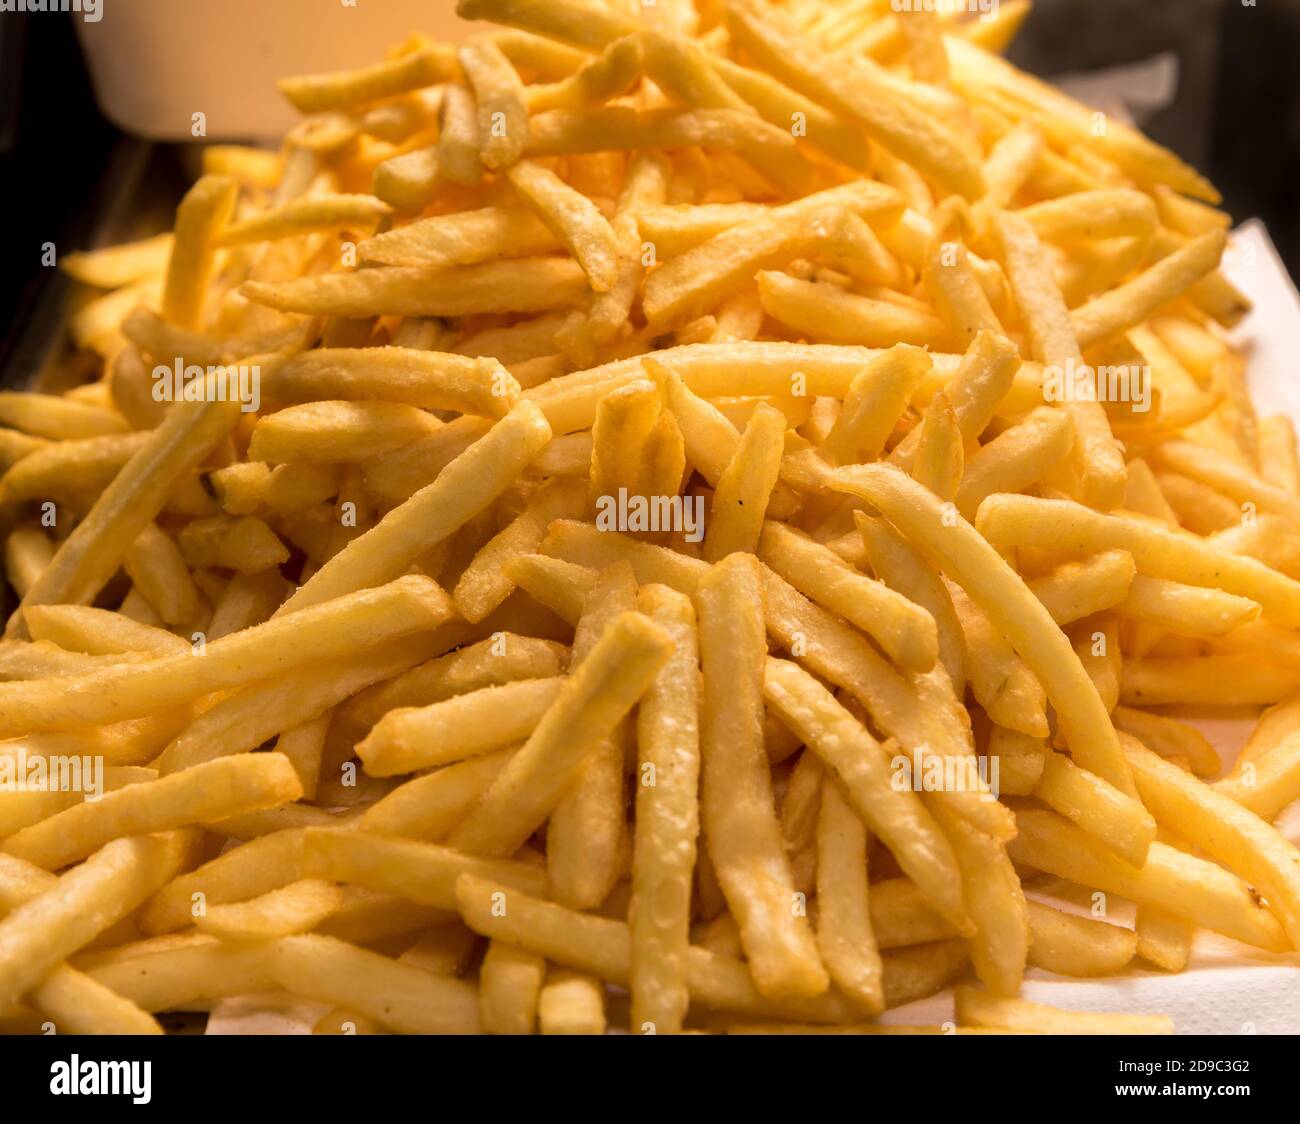 freshly fried golden fries Stock Photo